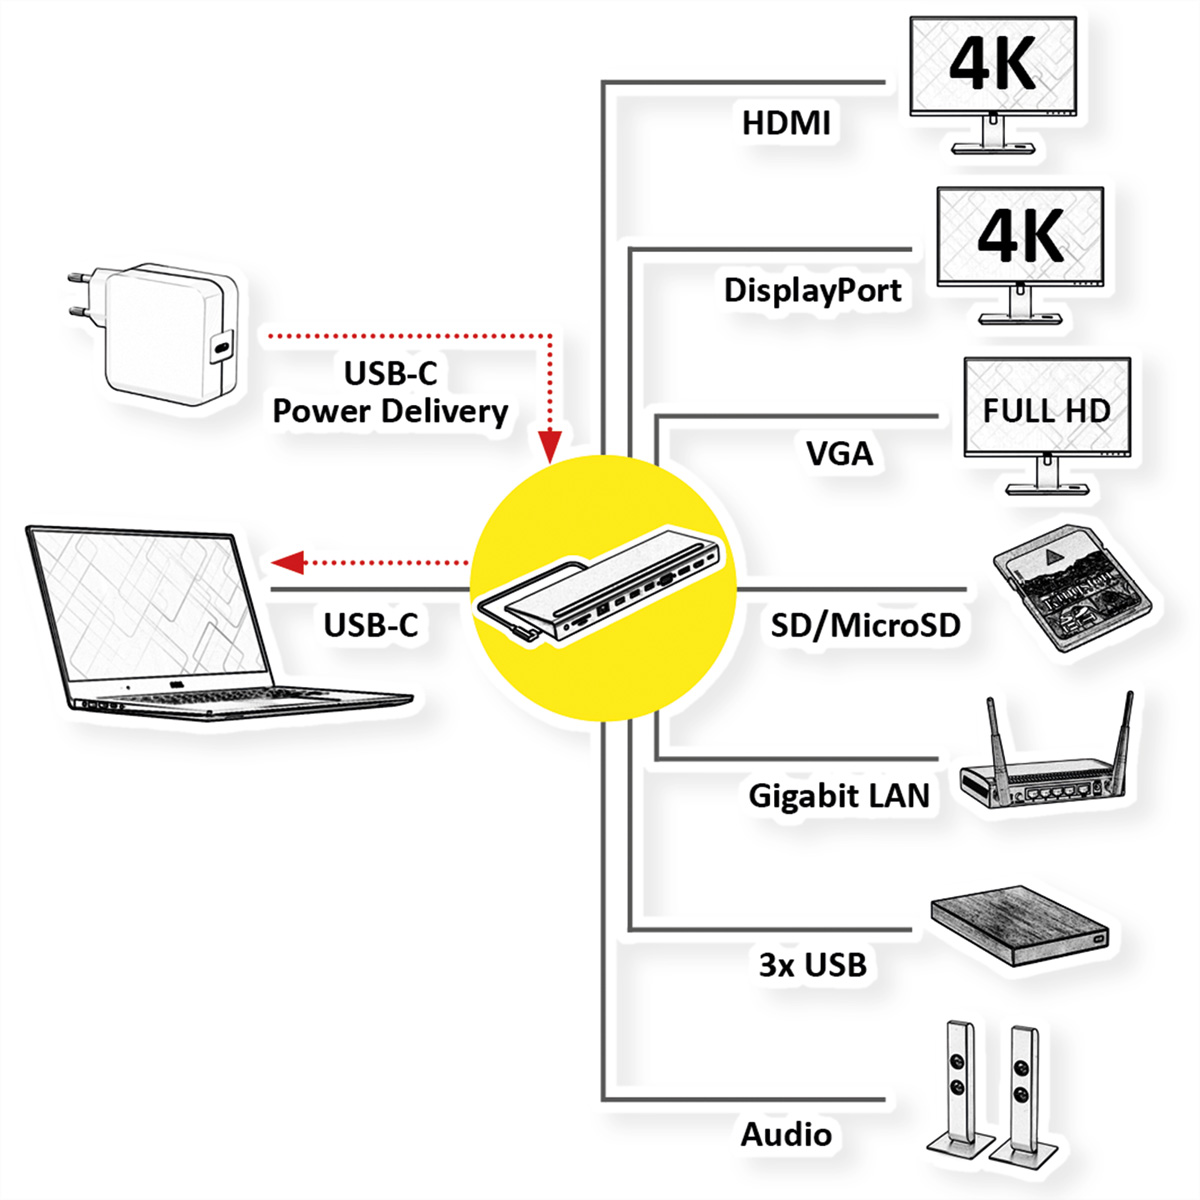 4K Dockingstation, VALUE Gen 2 HDMI/DP, Station, Docking Typ 3.2 VGA C Multiport grau USB